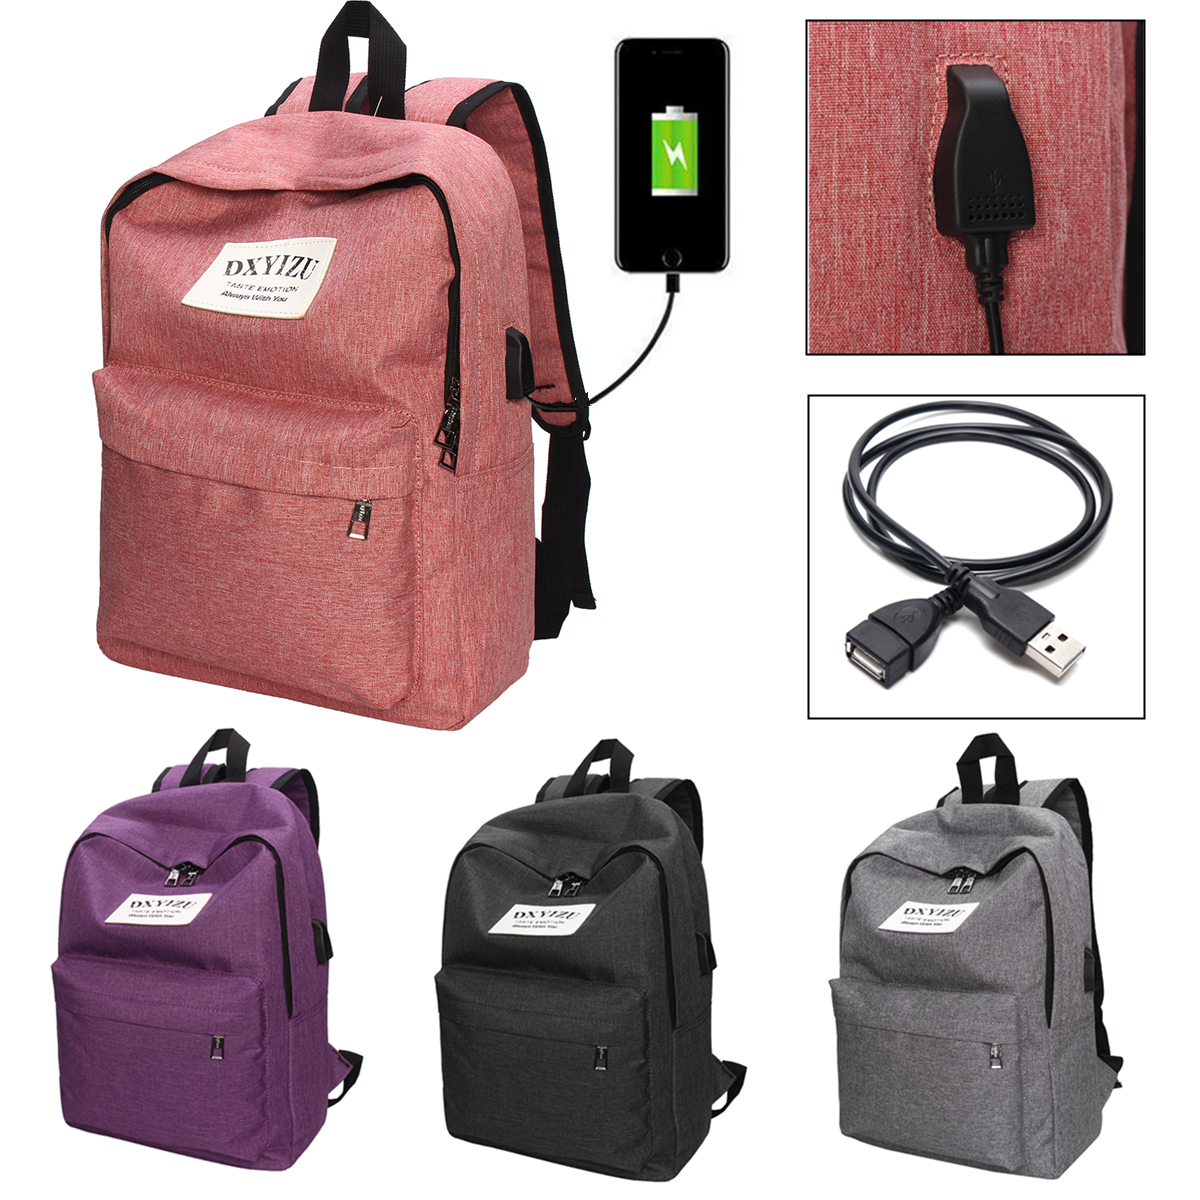 IPReetrade-Men-Women-USB-Charging-Backpack-Laptop-Bag-Travel-School-Book-Rucksack-1165838-1